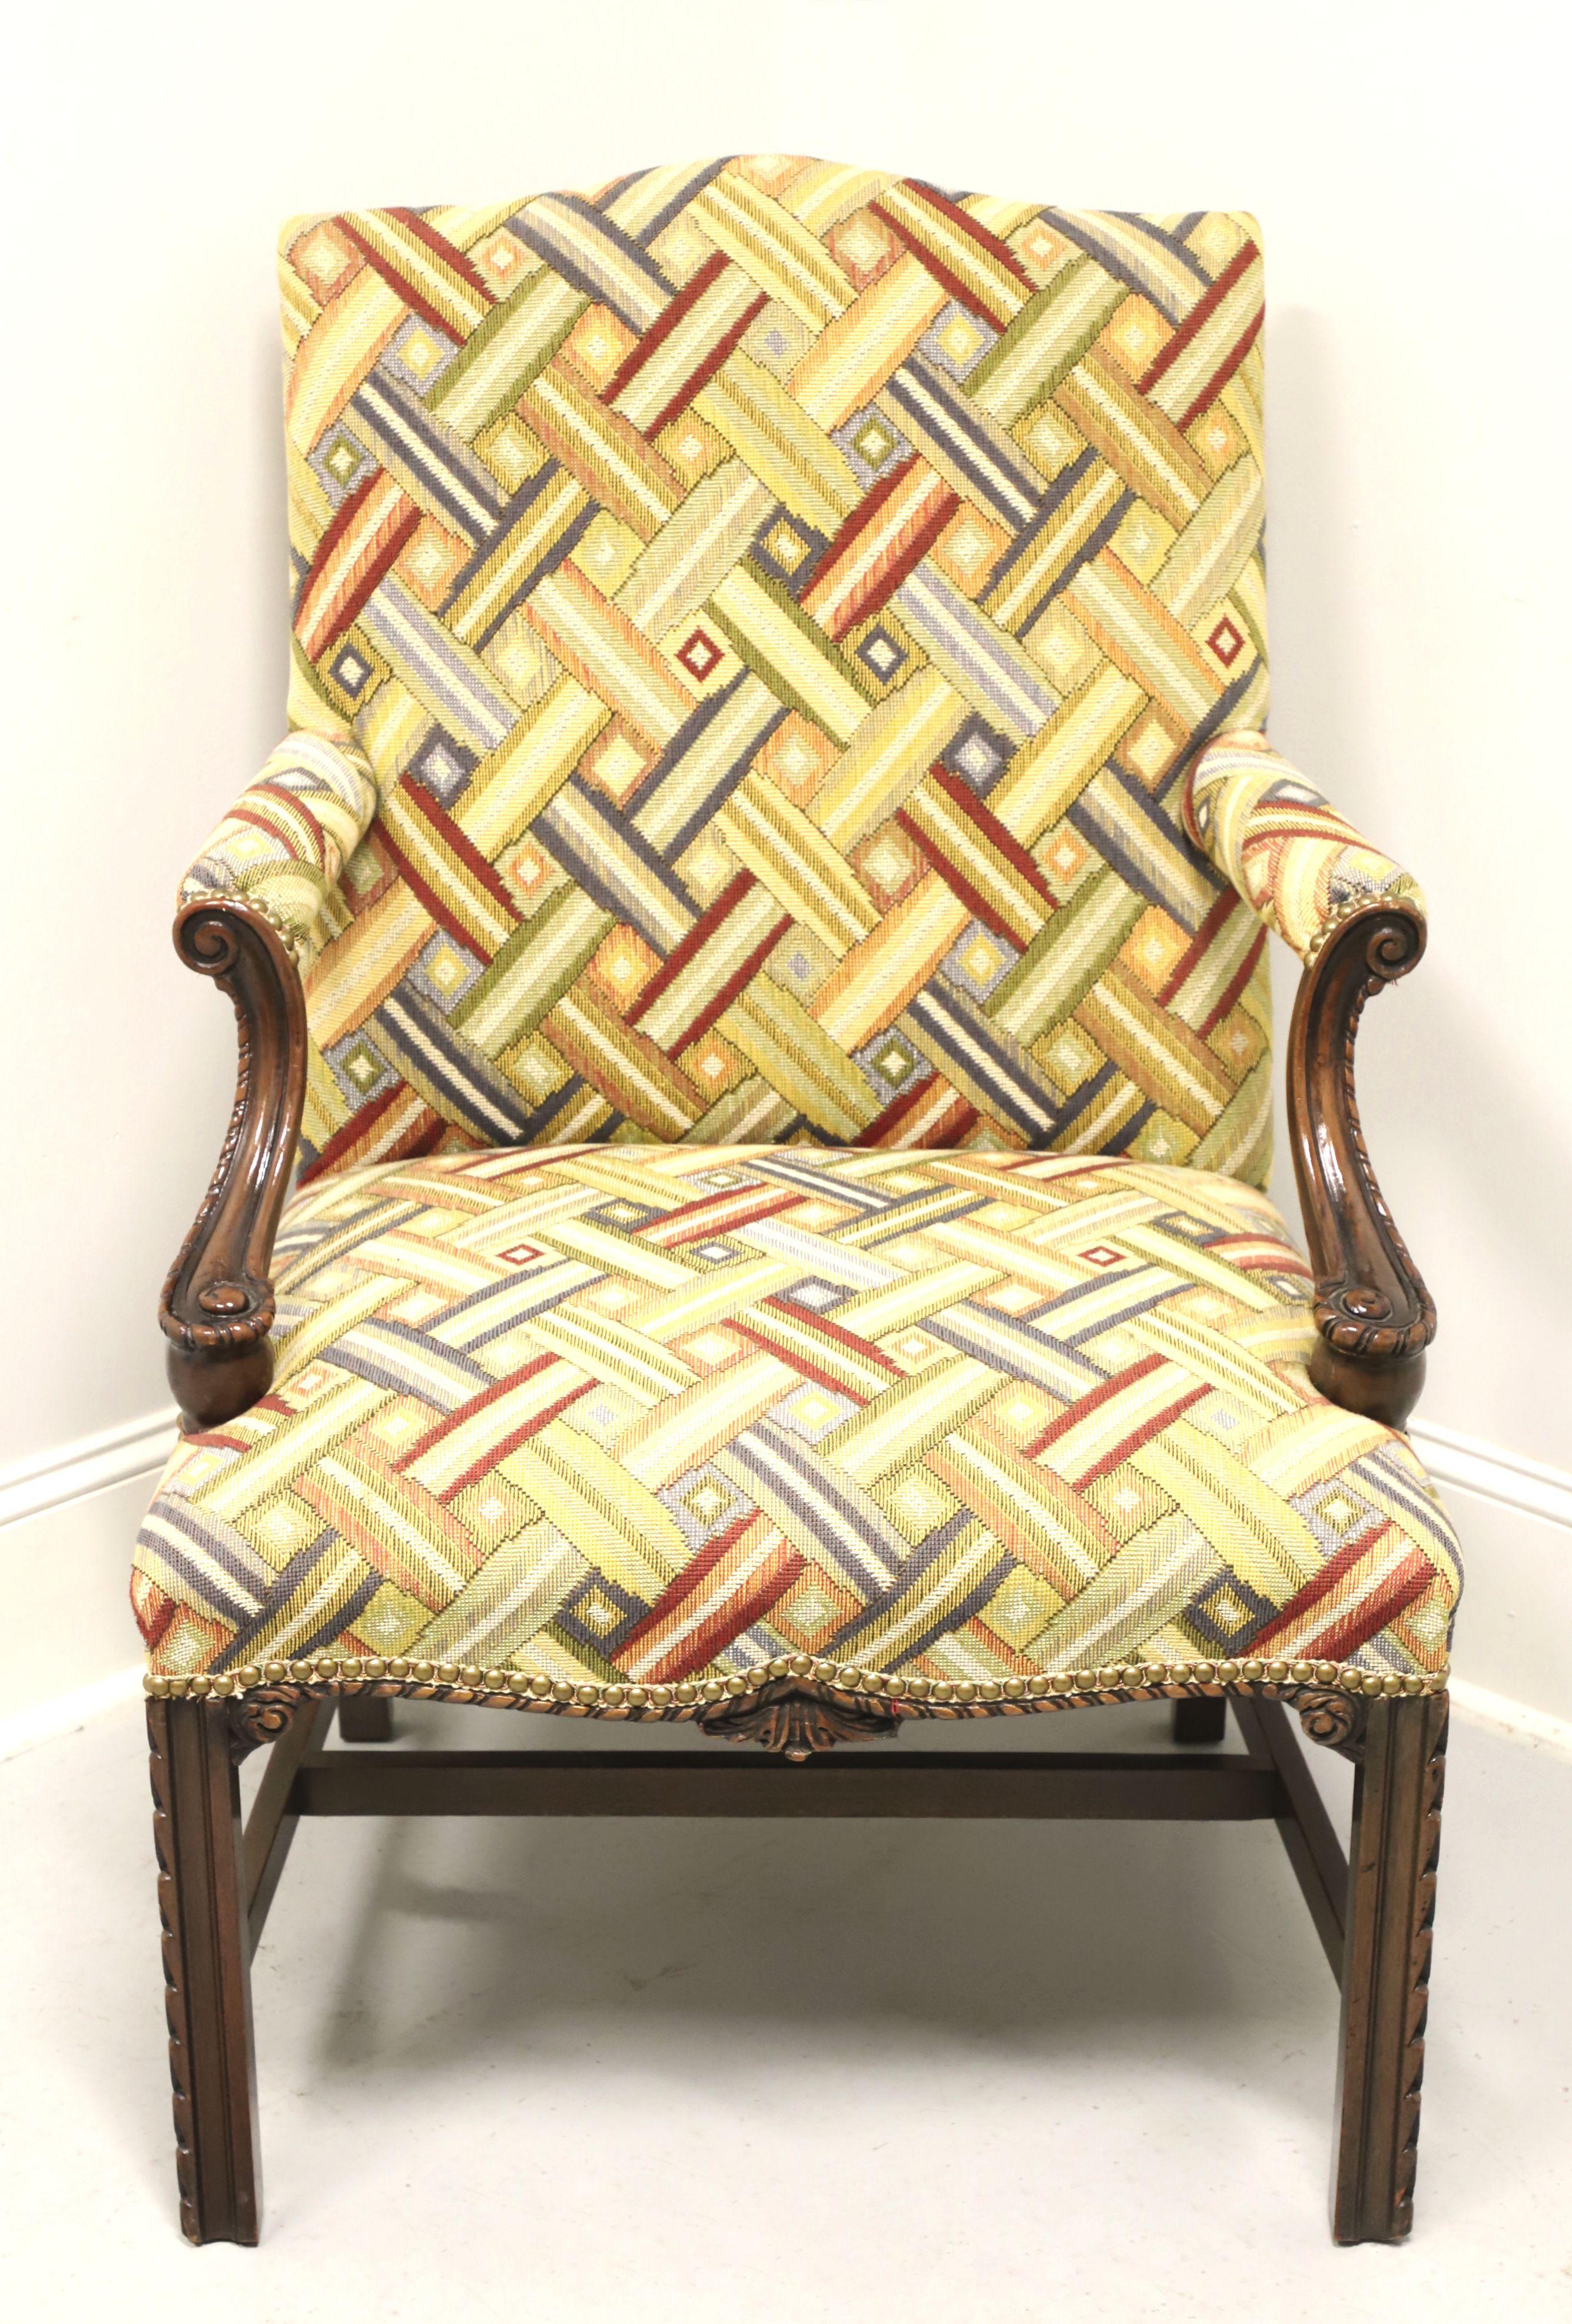 Fauteuil rembourré de style Martha Washington, sans marque, de qualité similaire à Drexel ou Hickory Chair. Structure en acajou, revêtement en tissu à motifs entrelacés multicolores, haut dossier, accoudoirs rembourrés avec supports en acajou